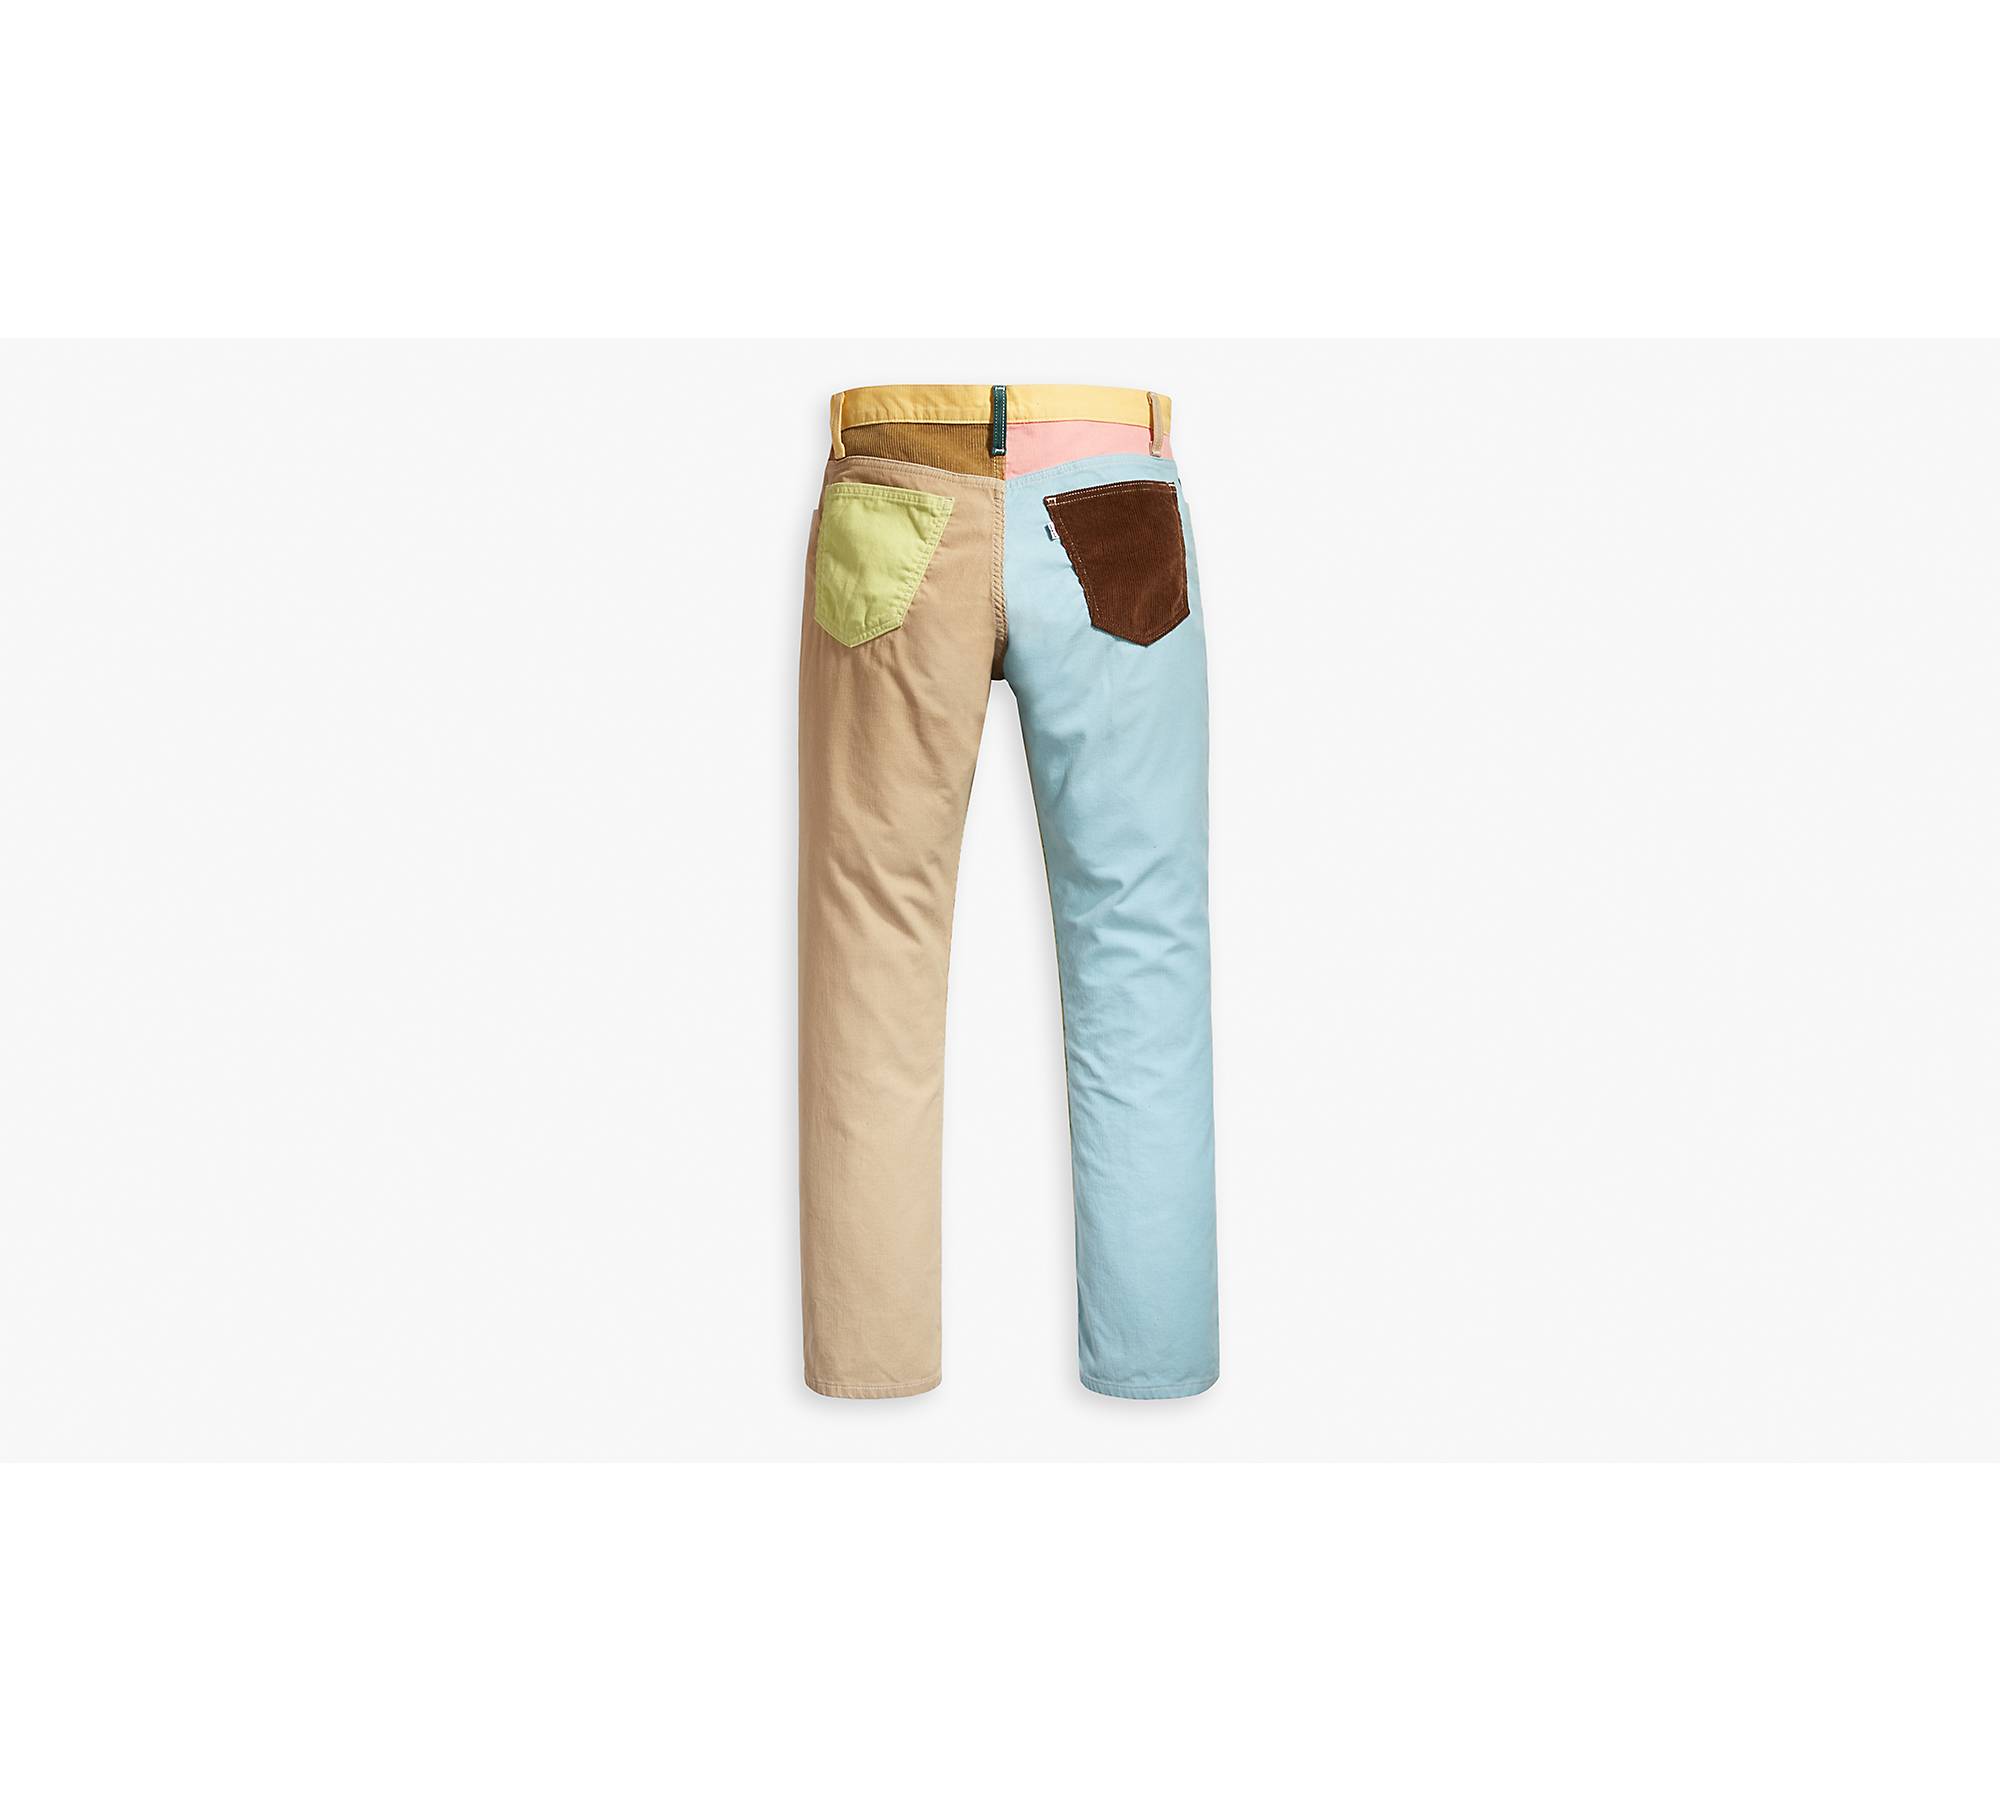 1970's Corduroy Pants - Multi-color